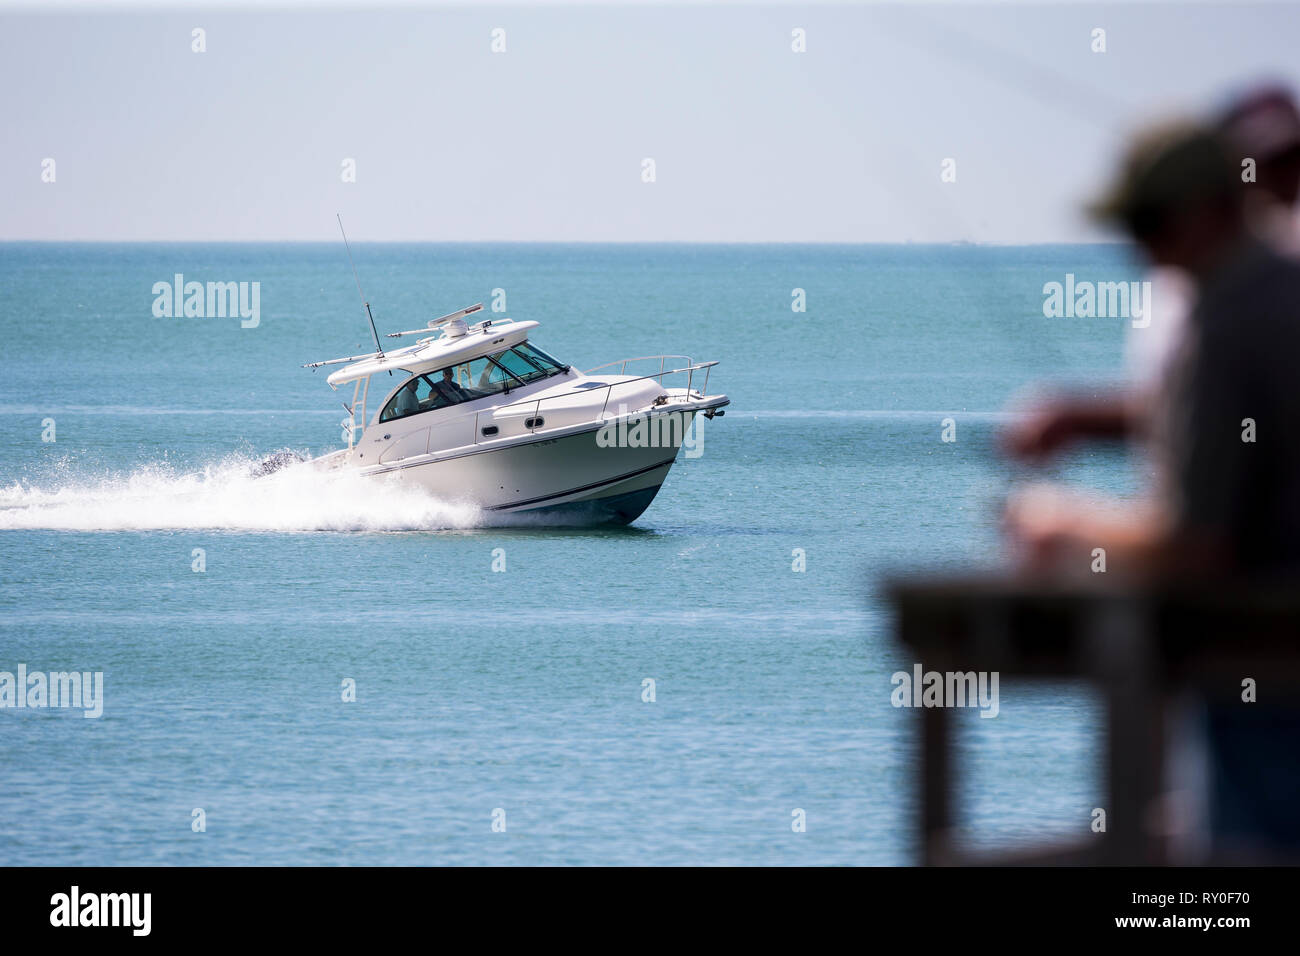 Ein Sportboot auf dem Golf von Mexiko faehrt am Pier vorbei bei THEMENBILD Florida, 06.02.2017 Bildnachweis: Mario Hommes / HH-Photography Stock Photo